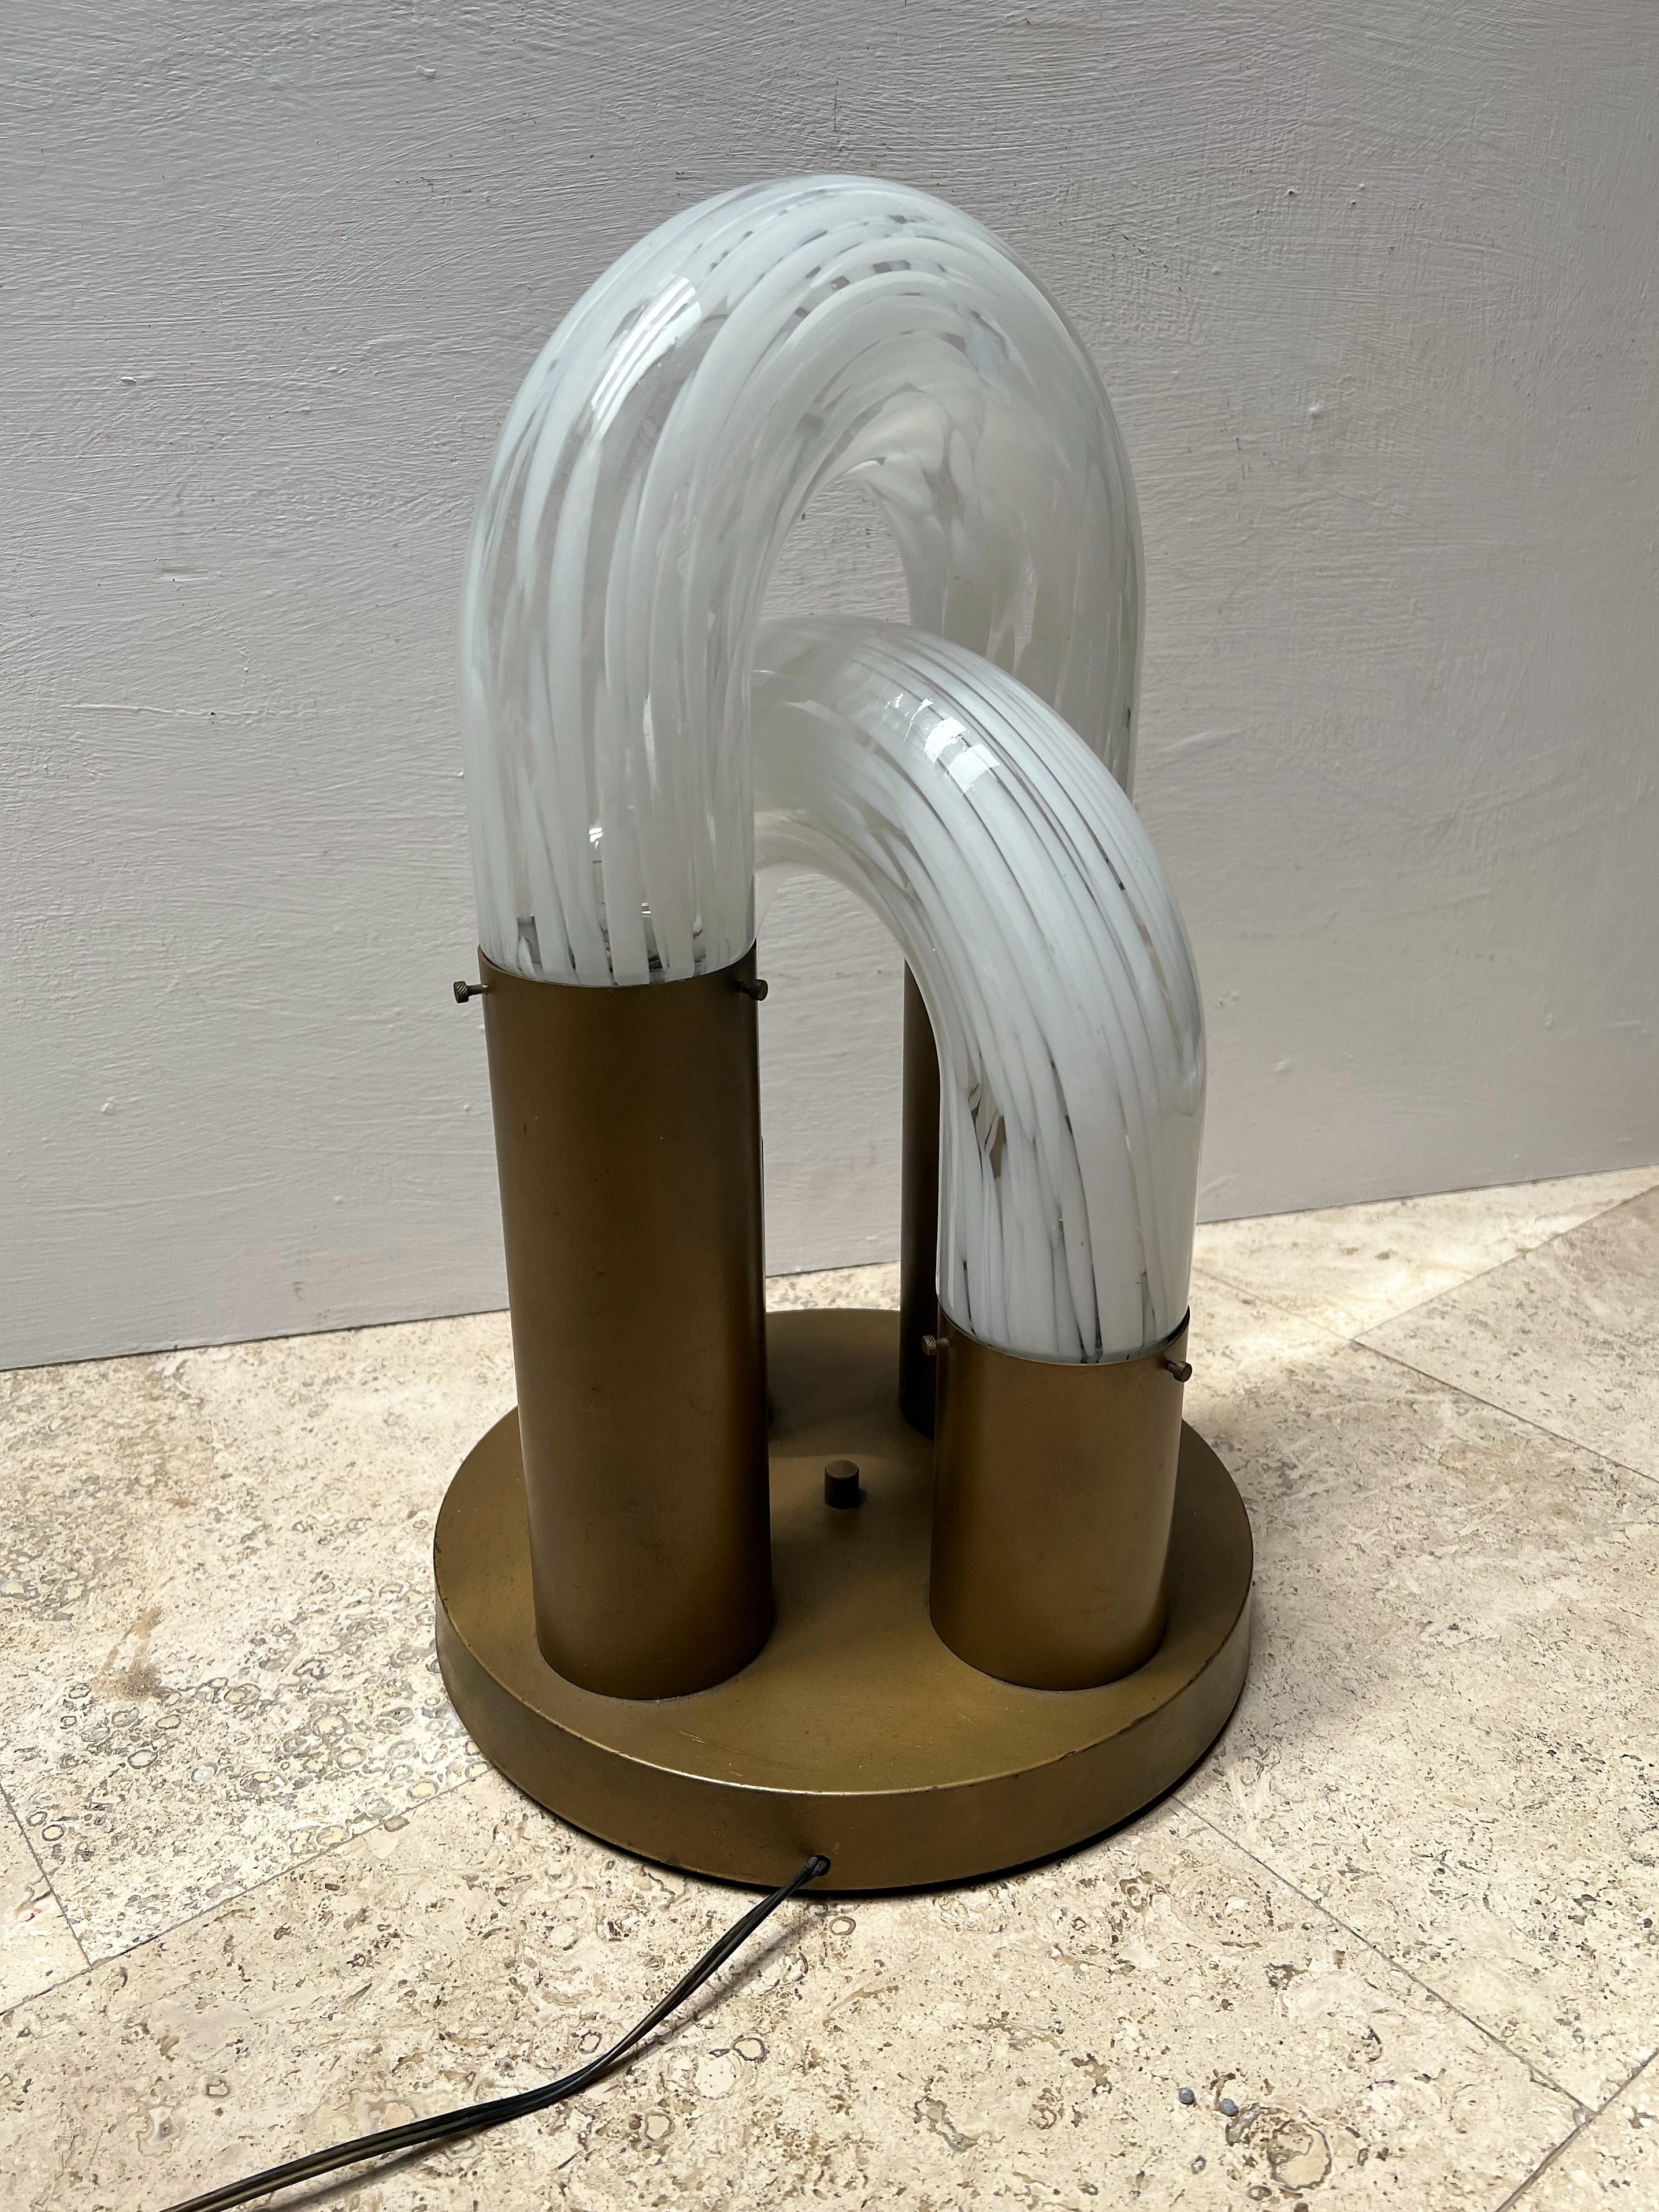 Lampe à quatre lumières de l'ère spatiale conçue par Aldo Nason vers 1970 en verre clair de Murano.  et verre blanc avec une base en métal laqué.
Cette lampe était à l'origine destinée à une table, mais elle peut facilement être installée en